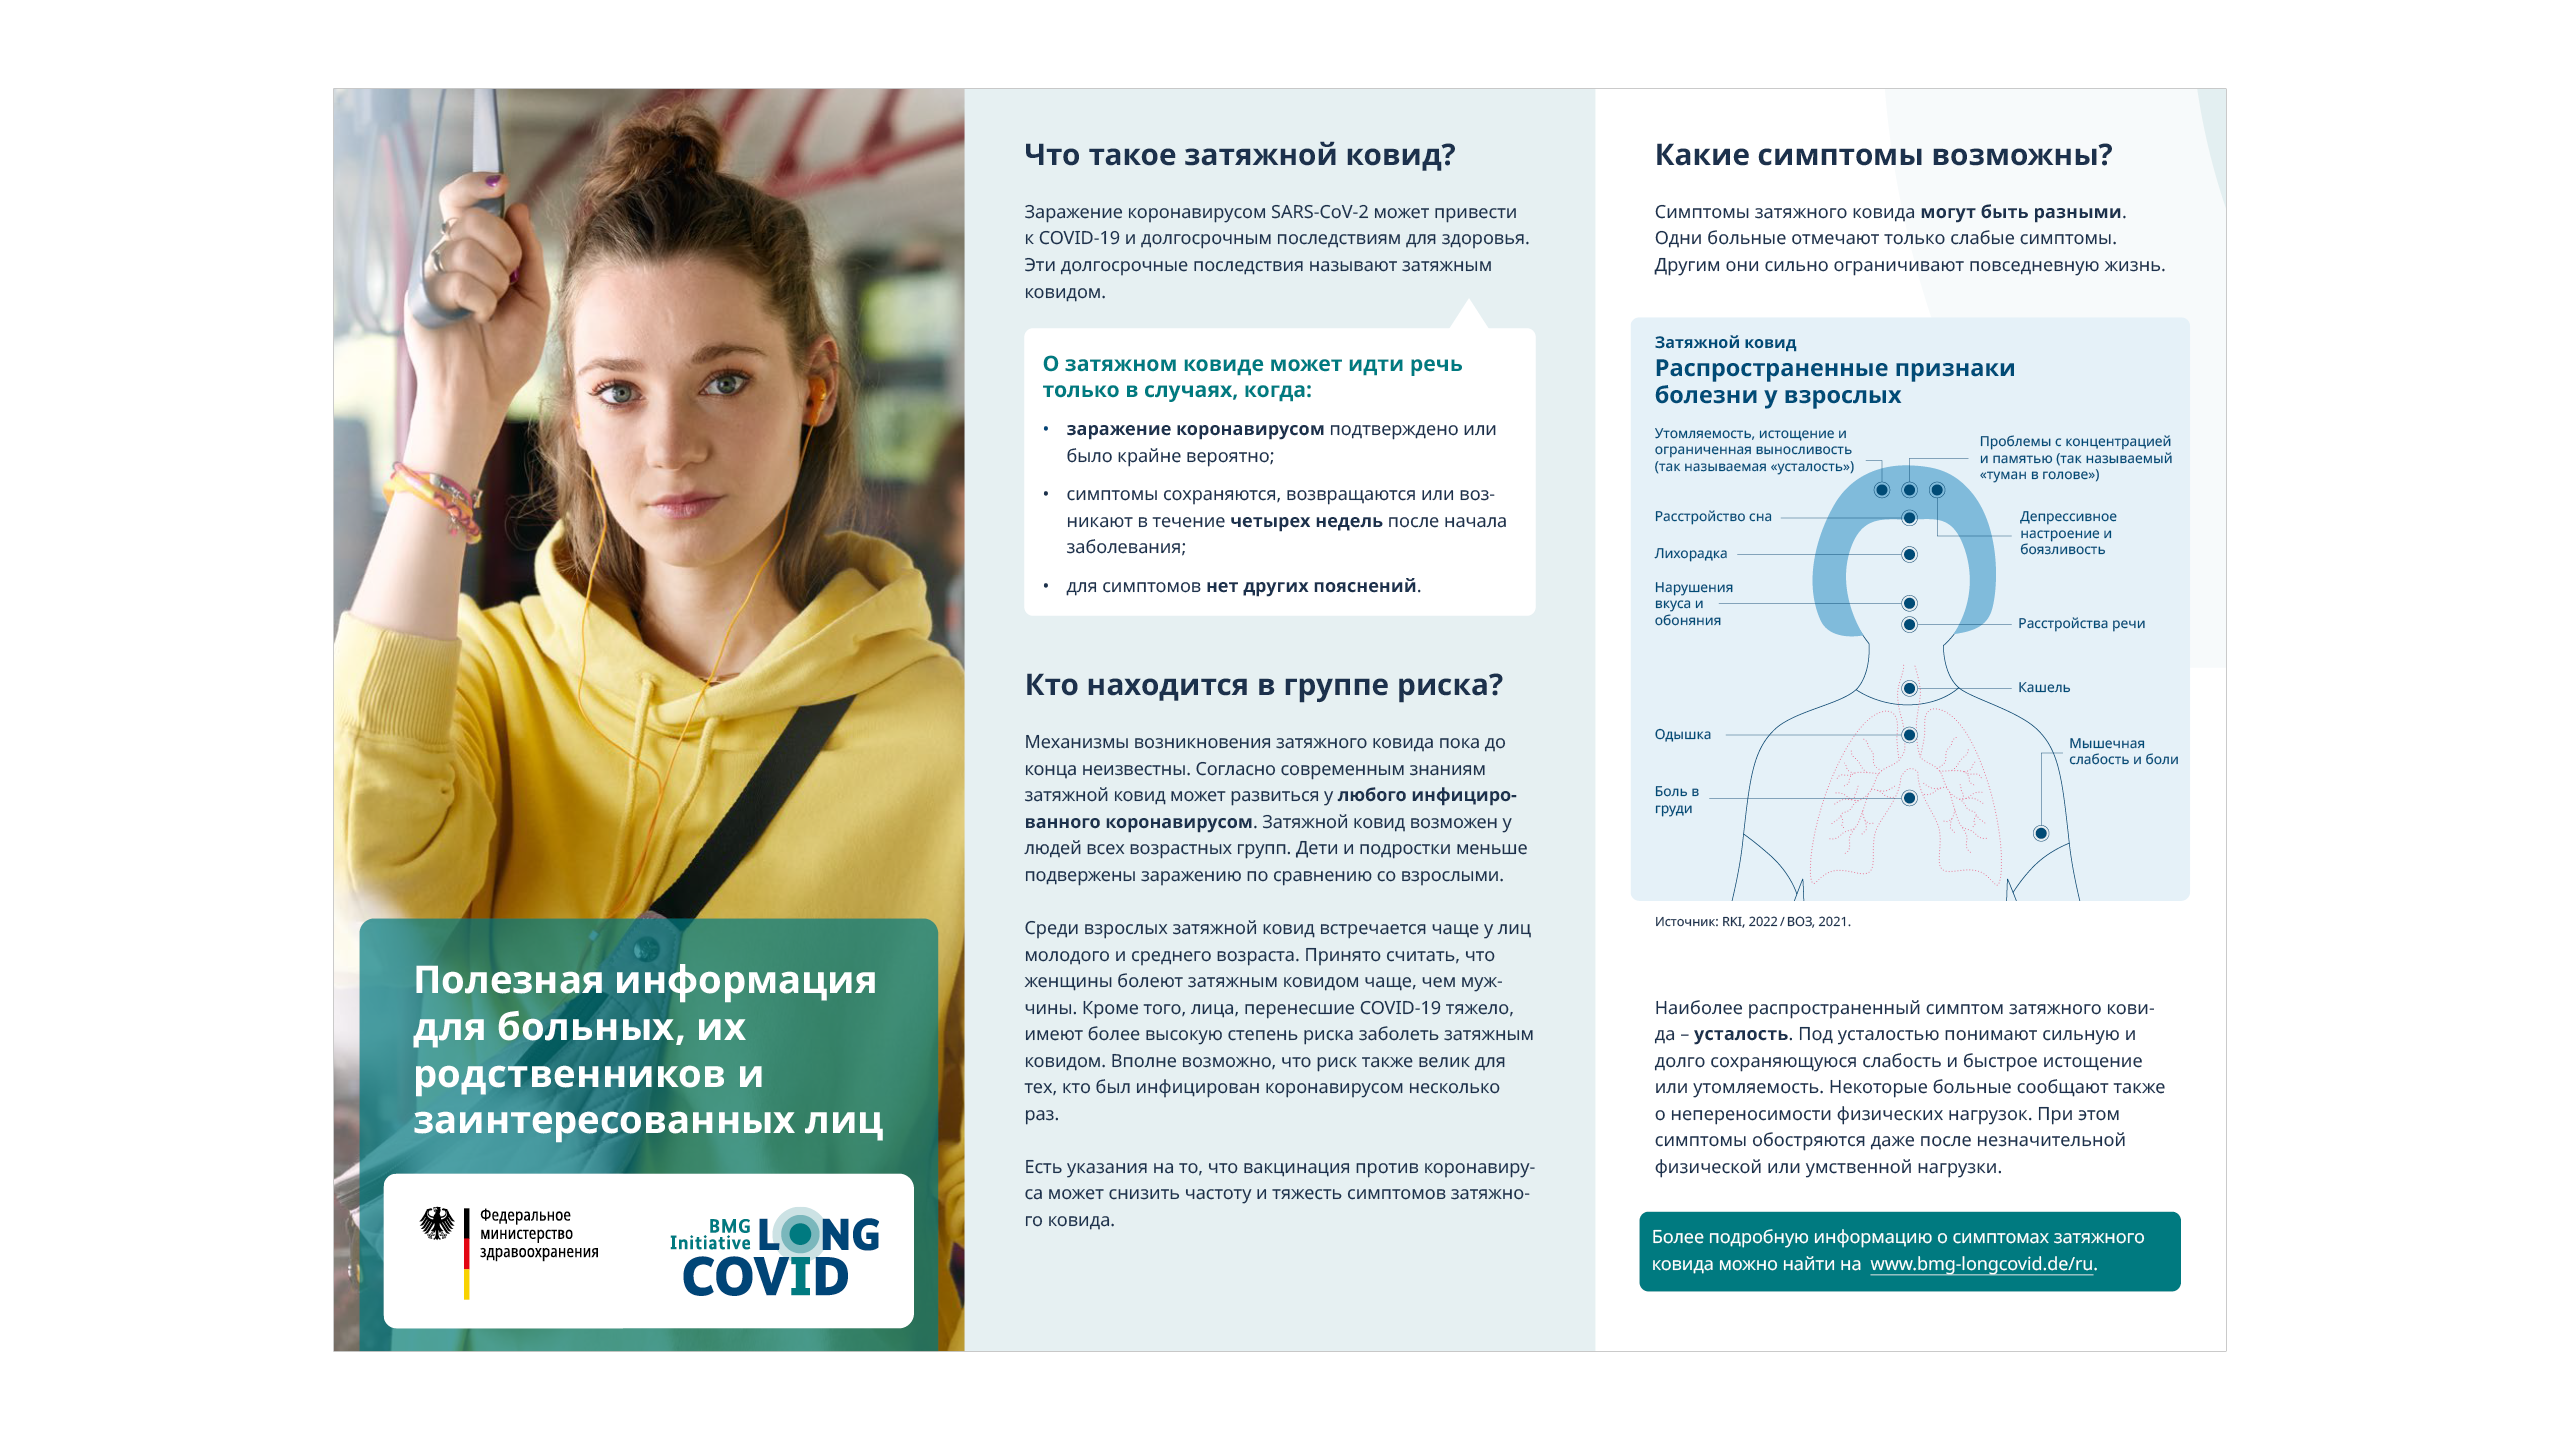 COVID-сомния: пандемия и проблемы со сном - какой эффект оказывает коронавирус на качество сна